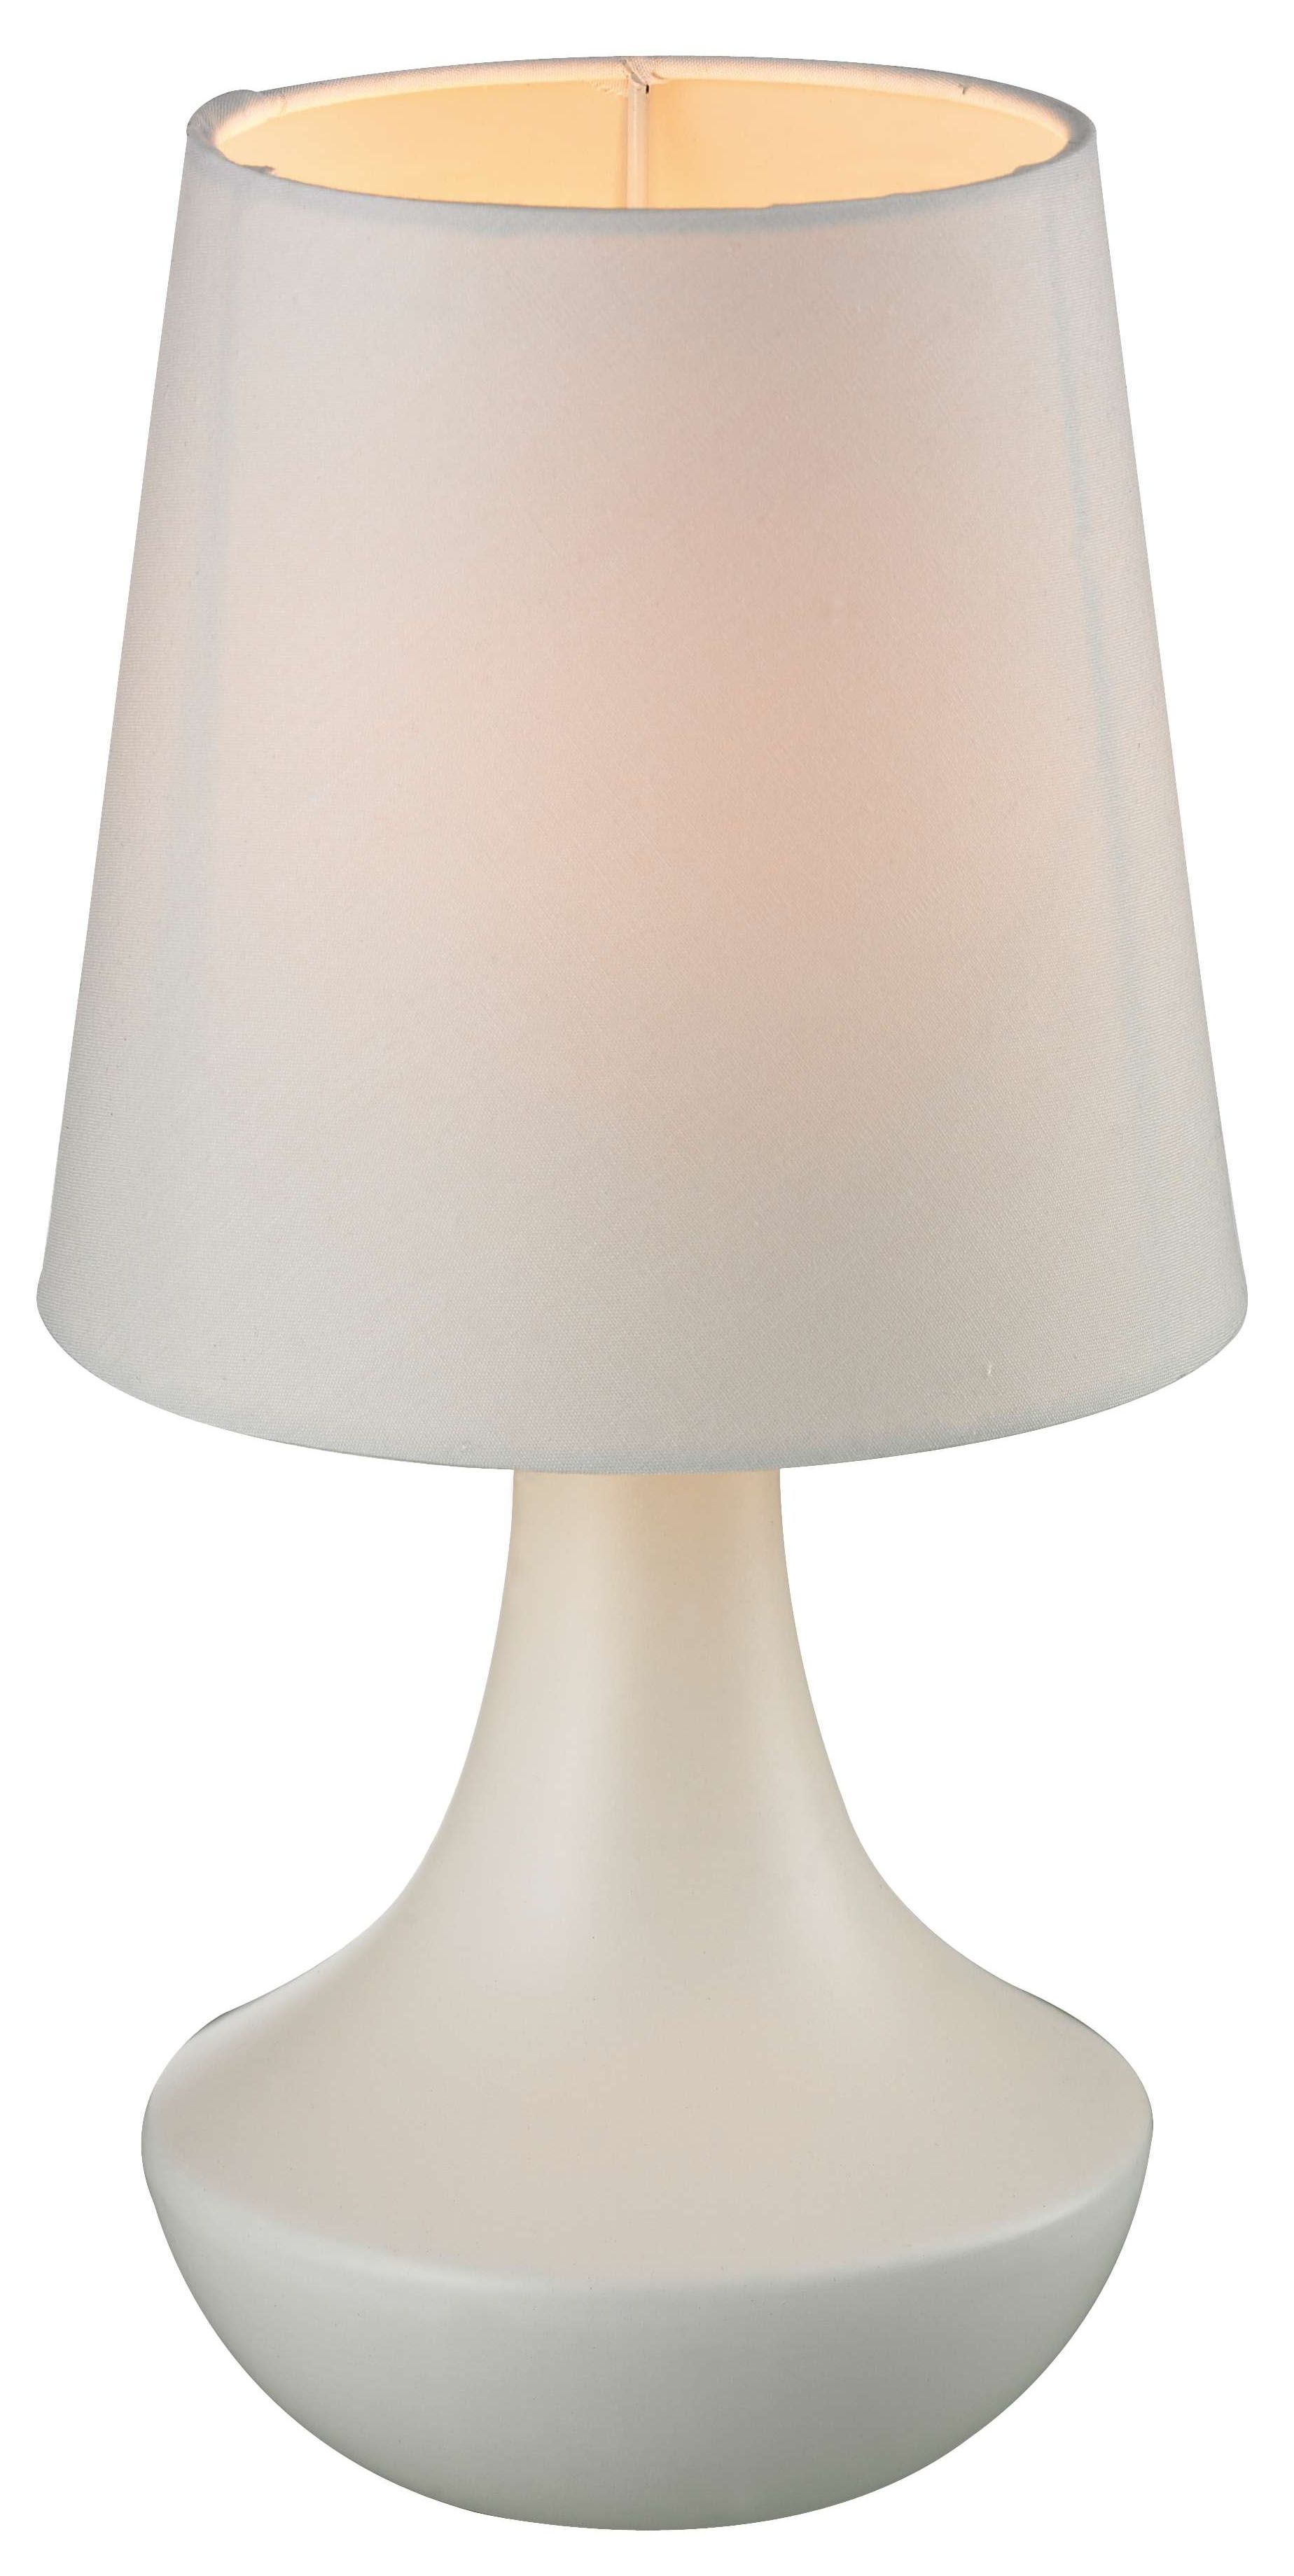 Weiße Nachttischlampe Keramik Stoff 29cm hoch Retro